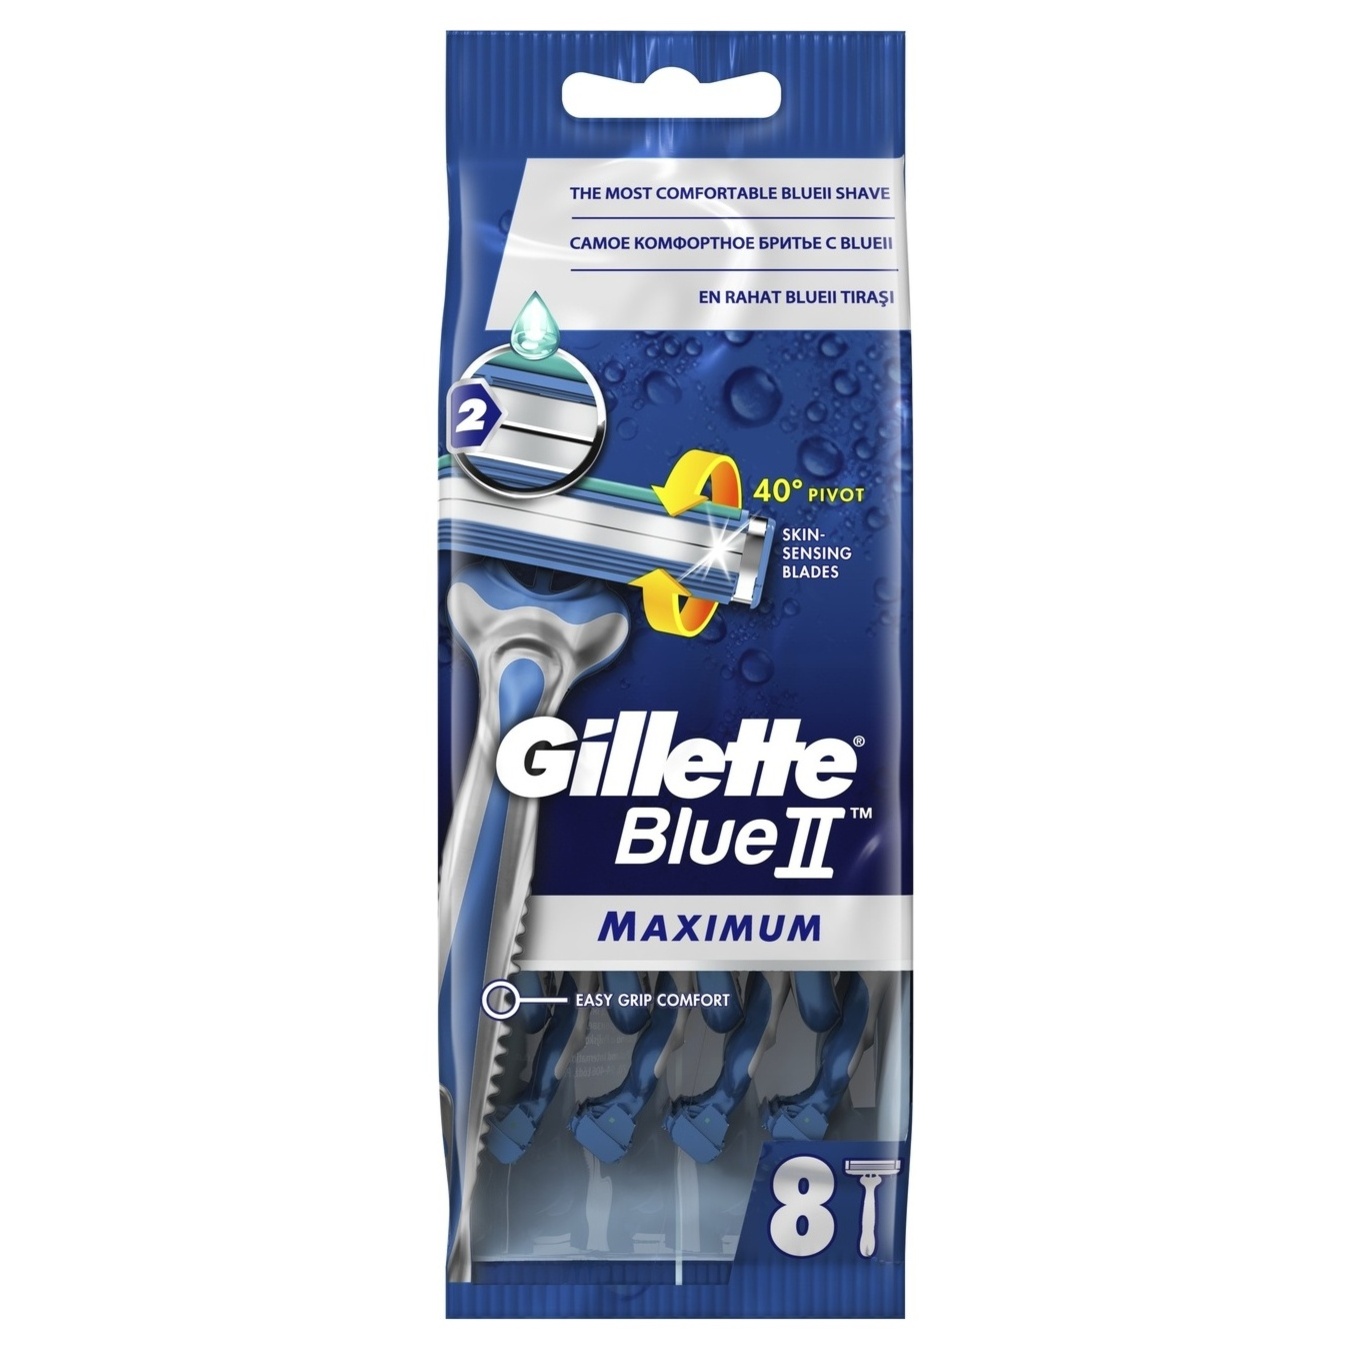 Бритвы Gillette одноразовые Blueii Max 6шт+2шт бесплатно